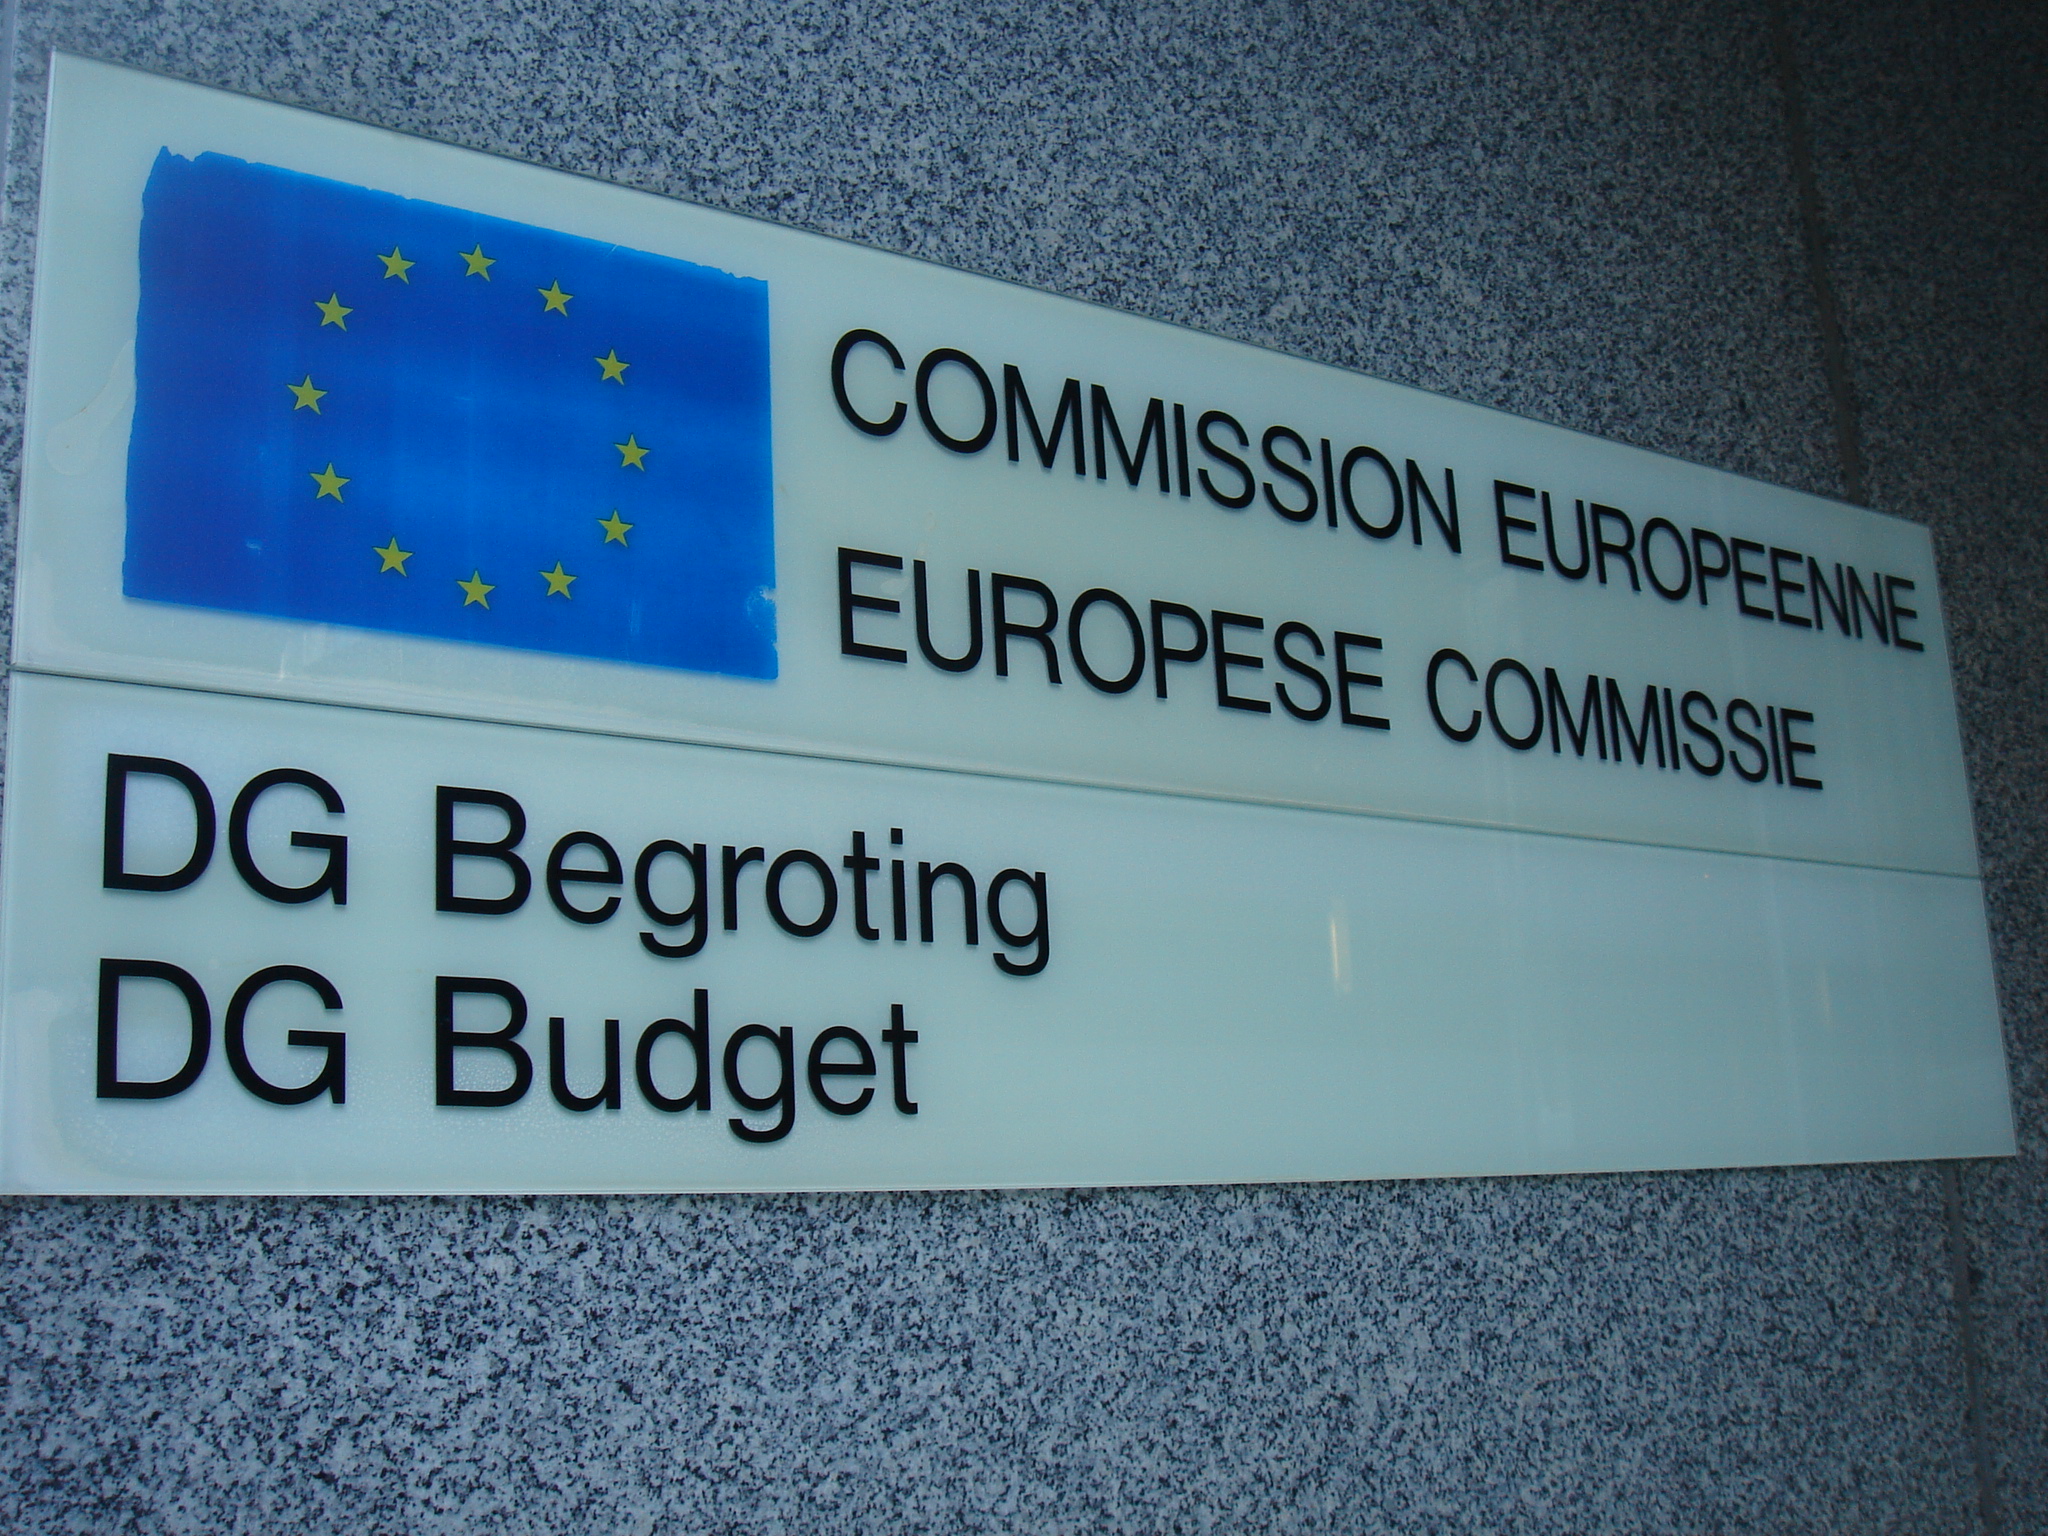 ΕΕ: Έκτακτη σύνοδος κορυφής για τον προϋπολογισμό της Ένωσης